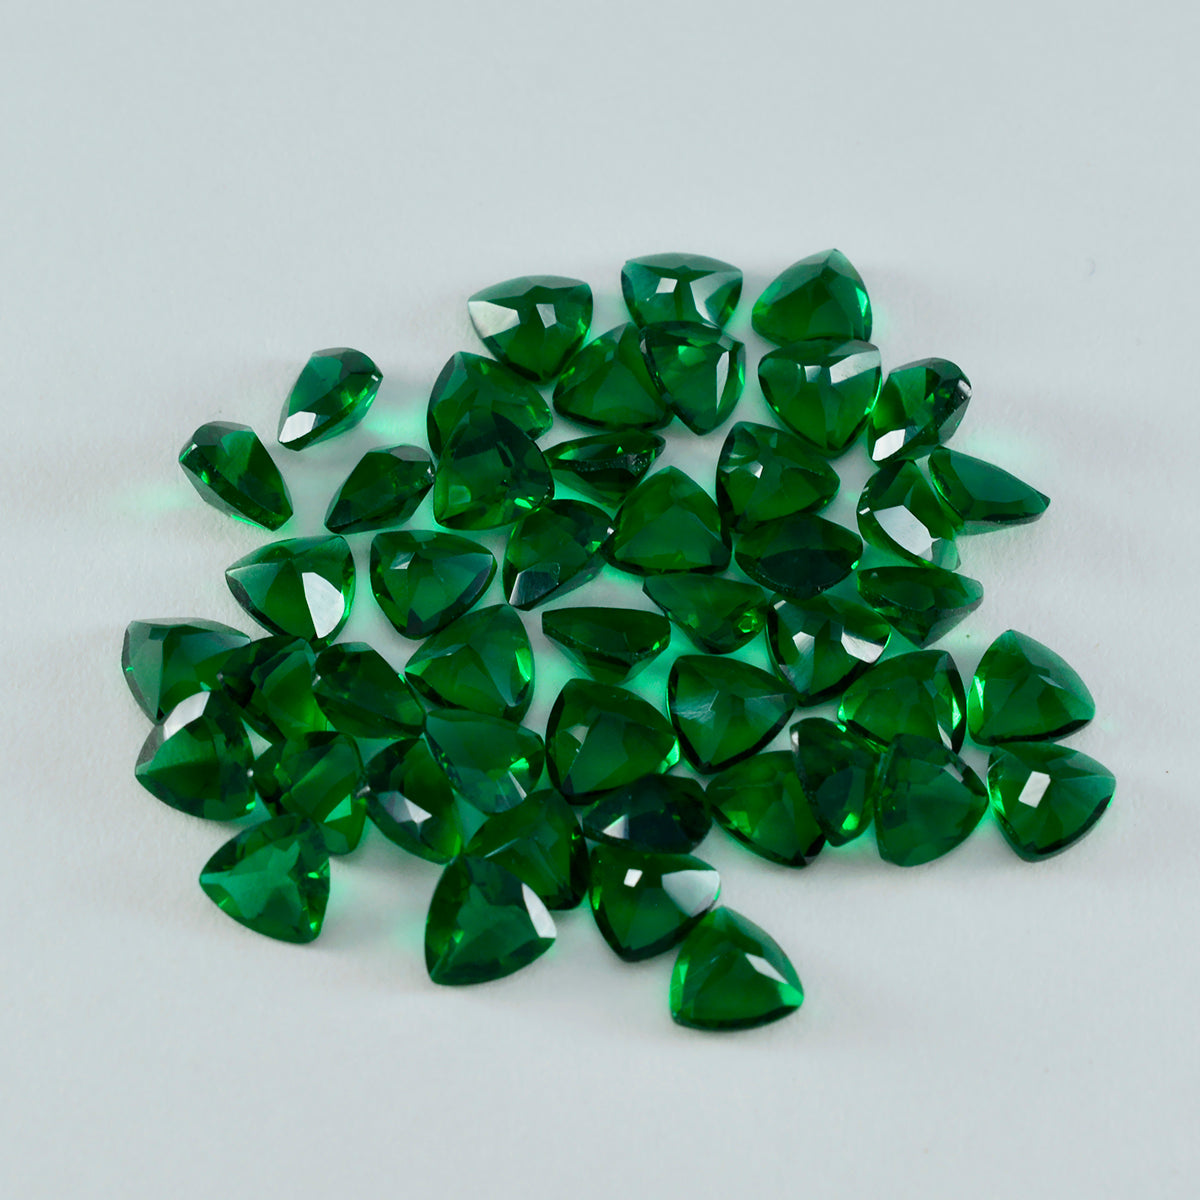 riyogems 1pc グリーン エメラルド CZ ファセット 6x6 mm 兆形状の素晴らしい品質の宝石